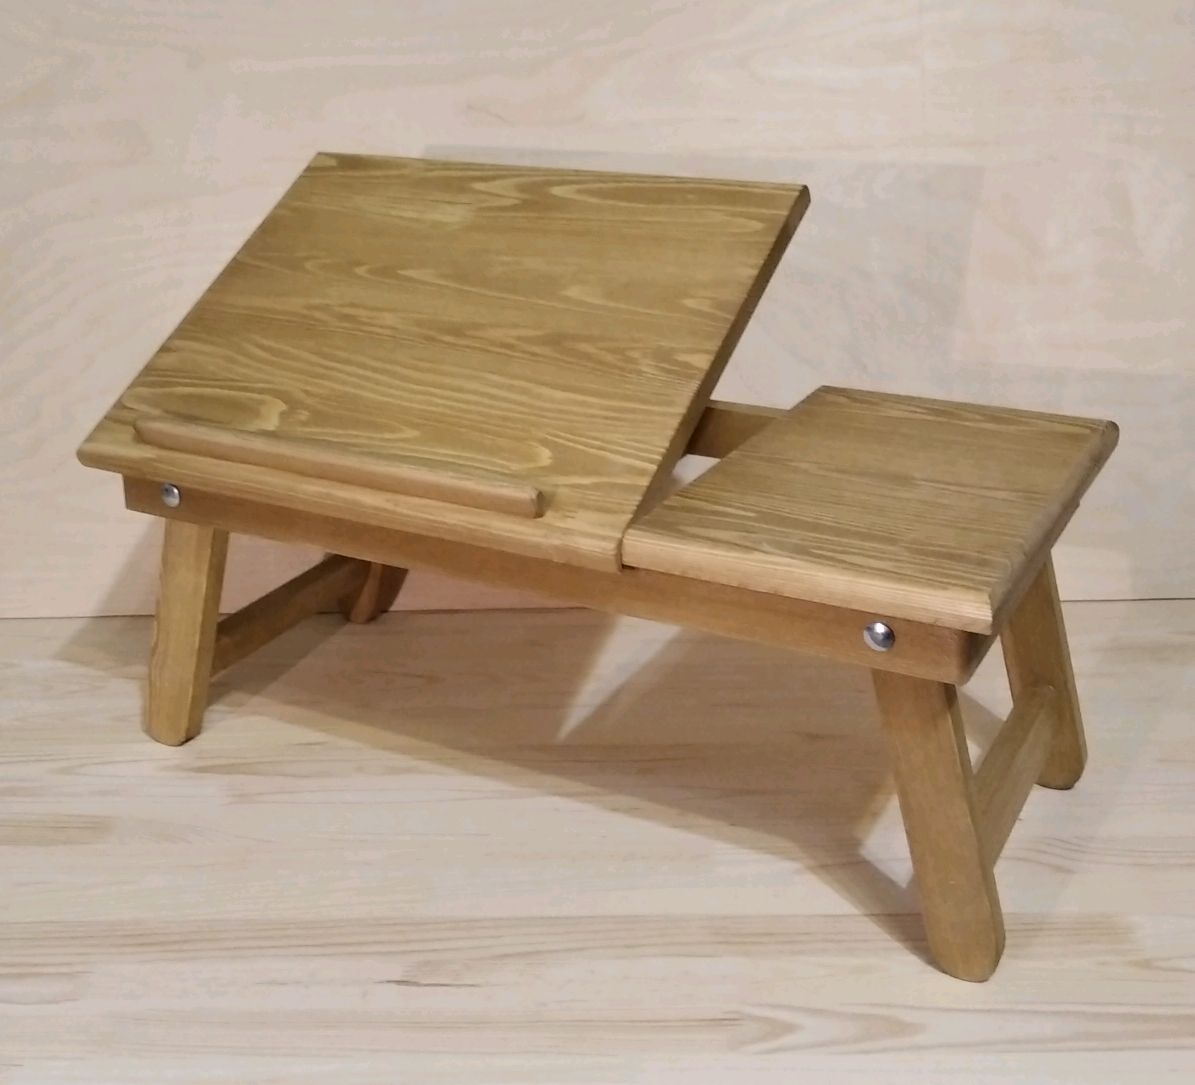 складные столики для ноутбука из дерева